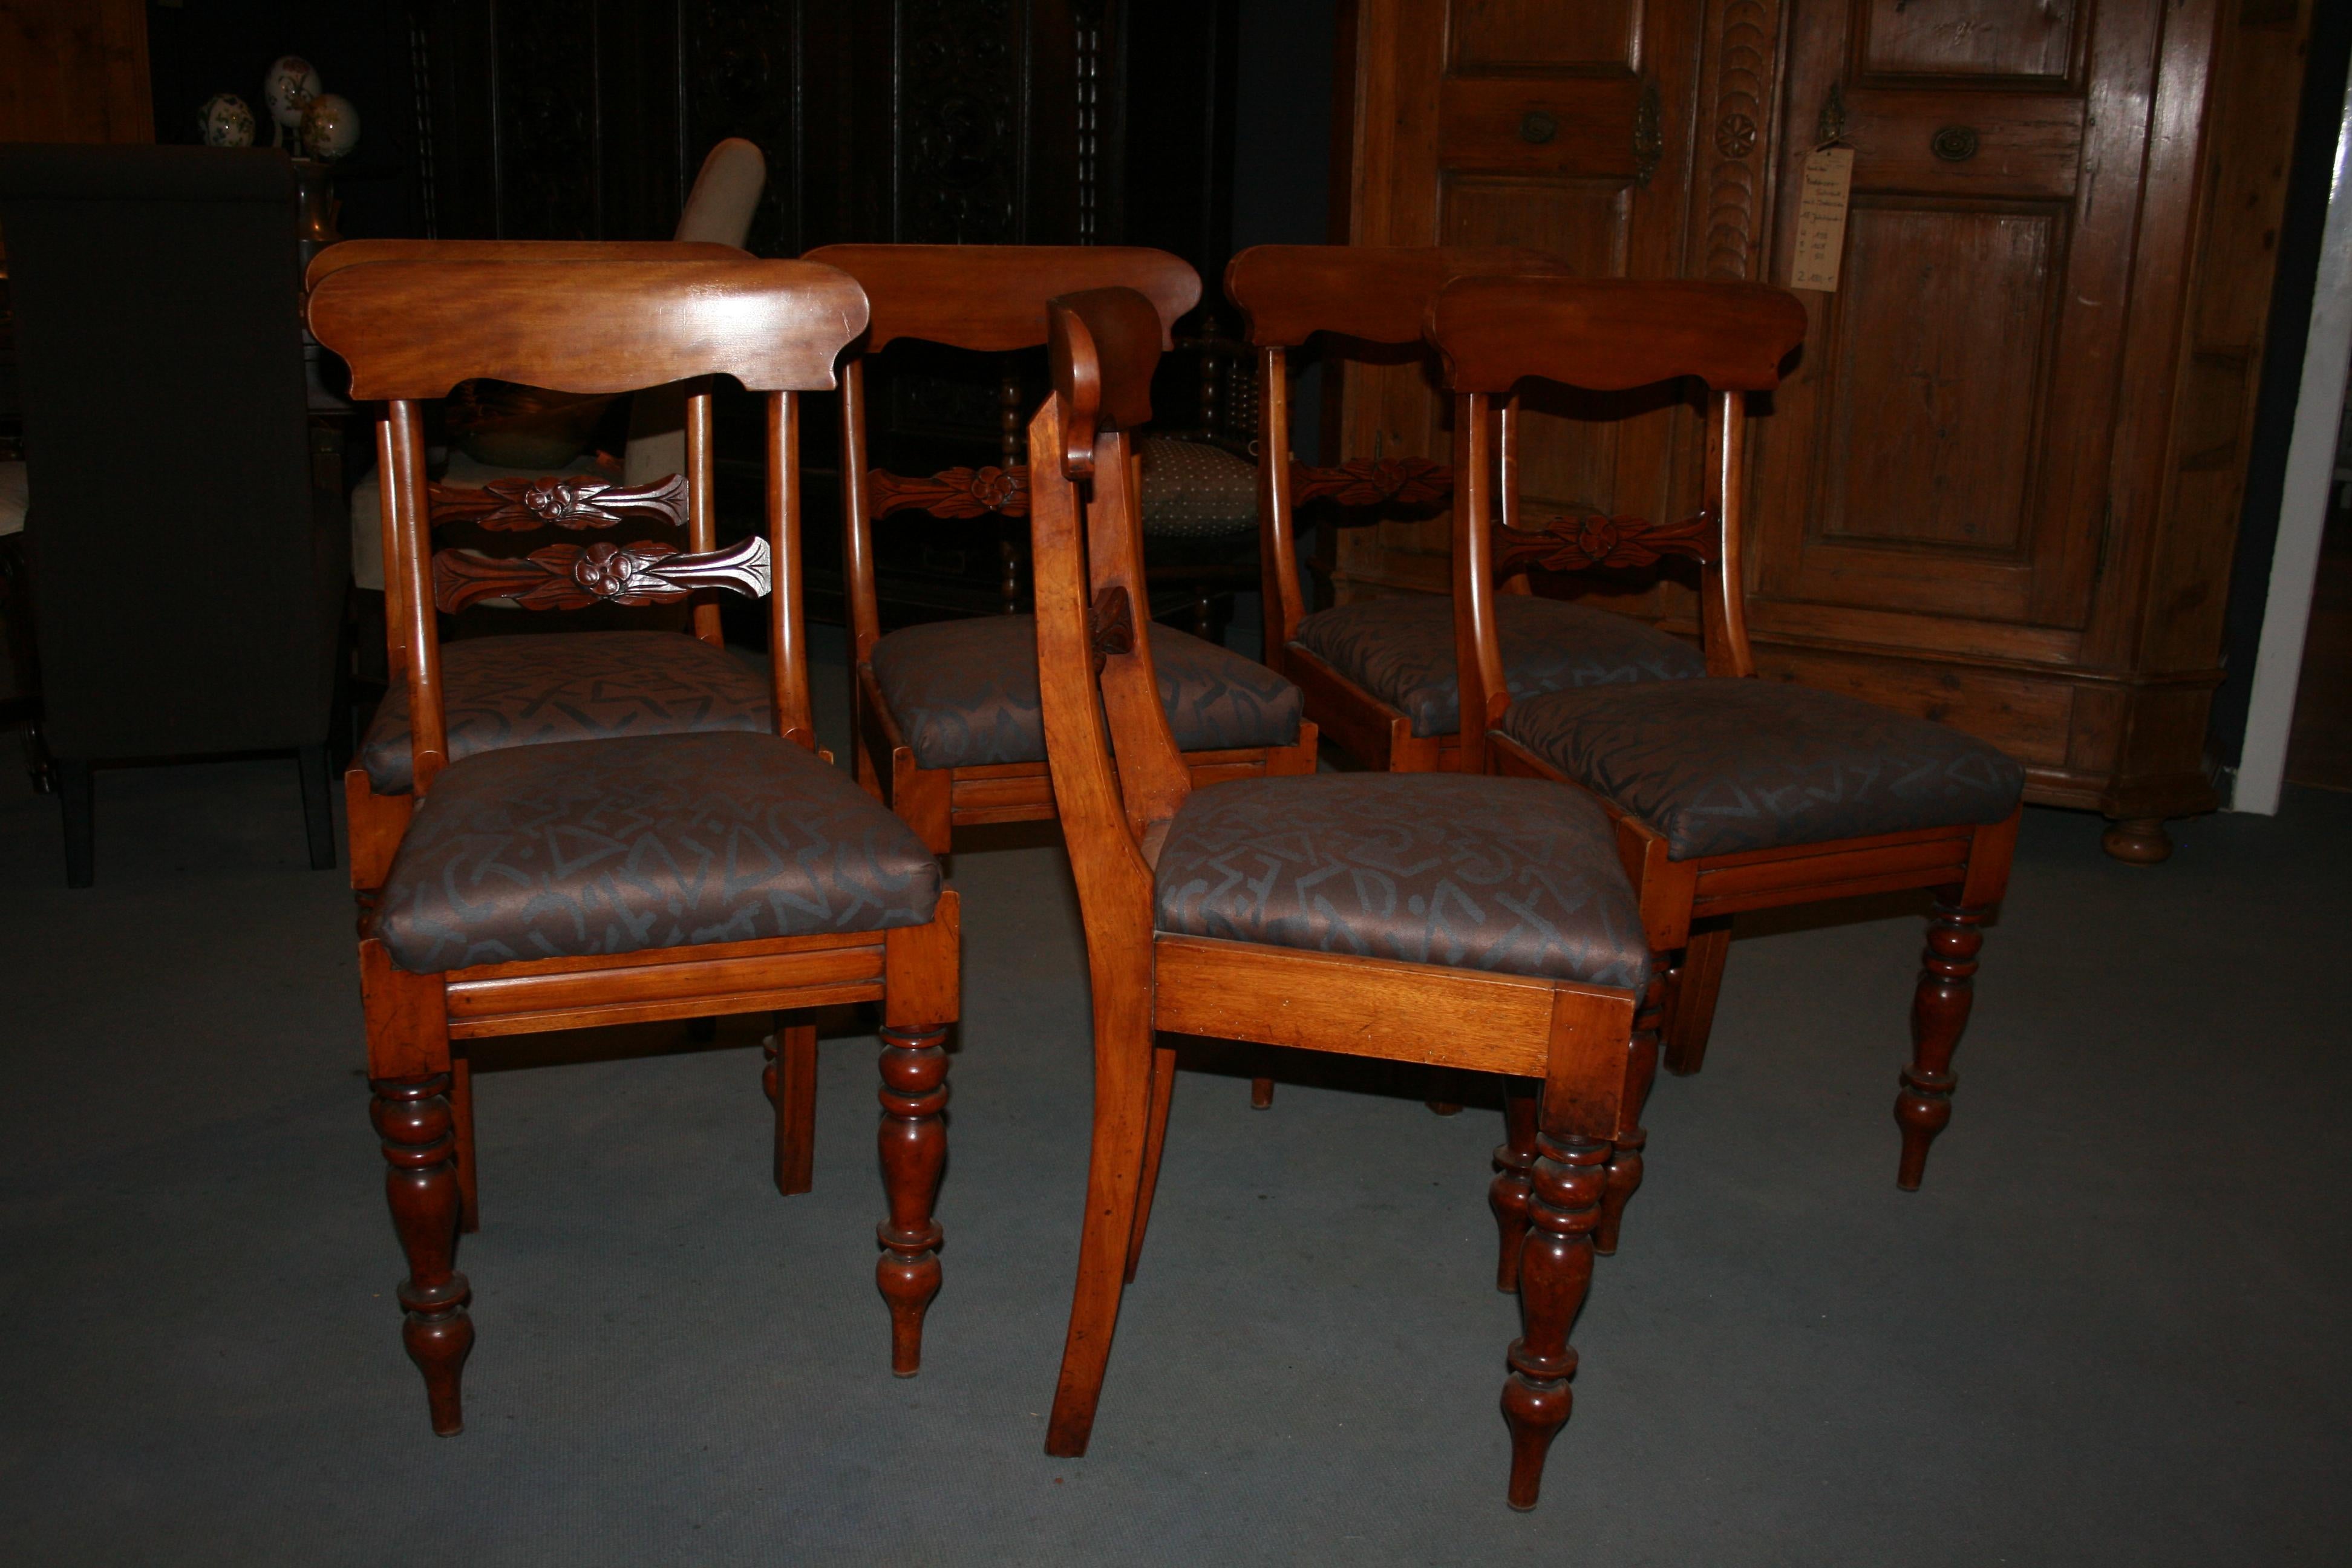 Antike Stuhlgruppe bestehend aus 6 Stühlen. Alle Stühle mit neu gepolsterter Sitzfläche und neuem Bezug.